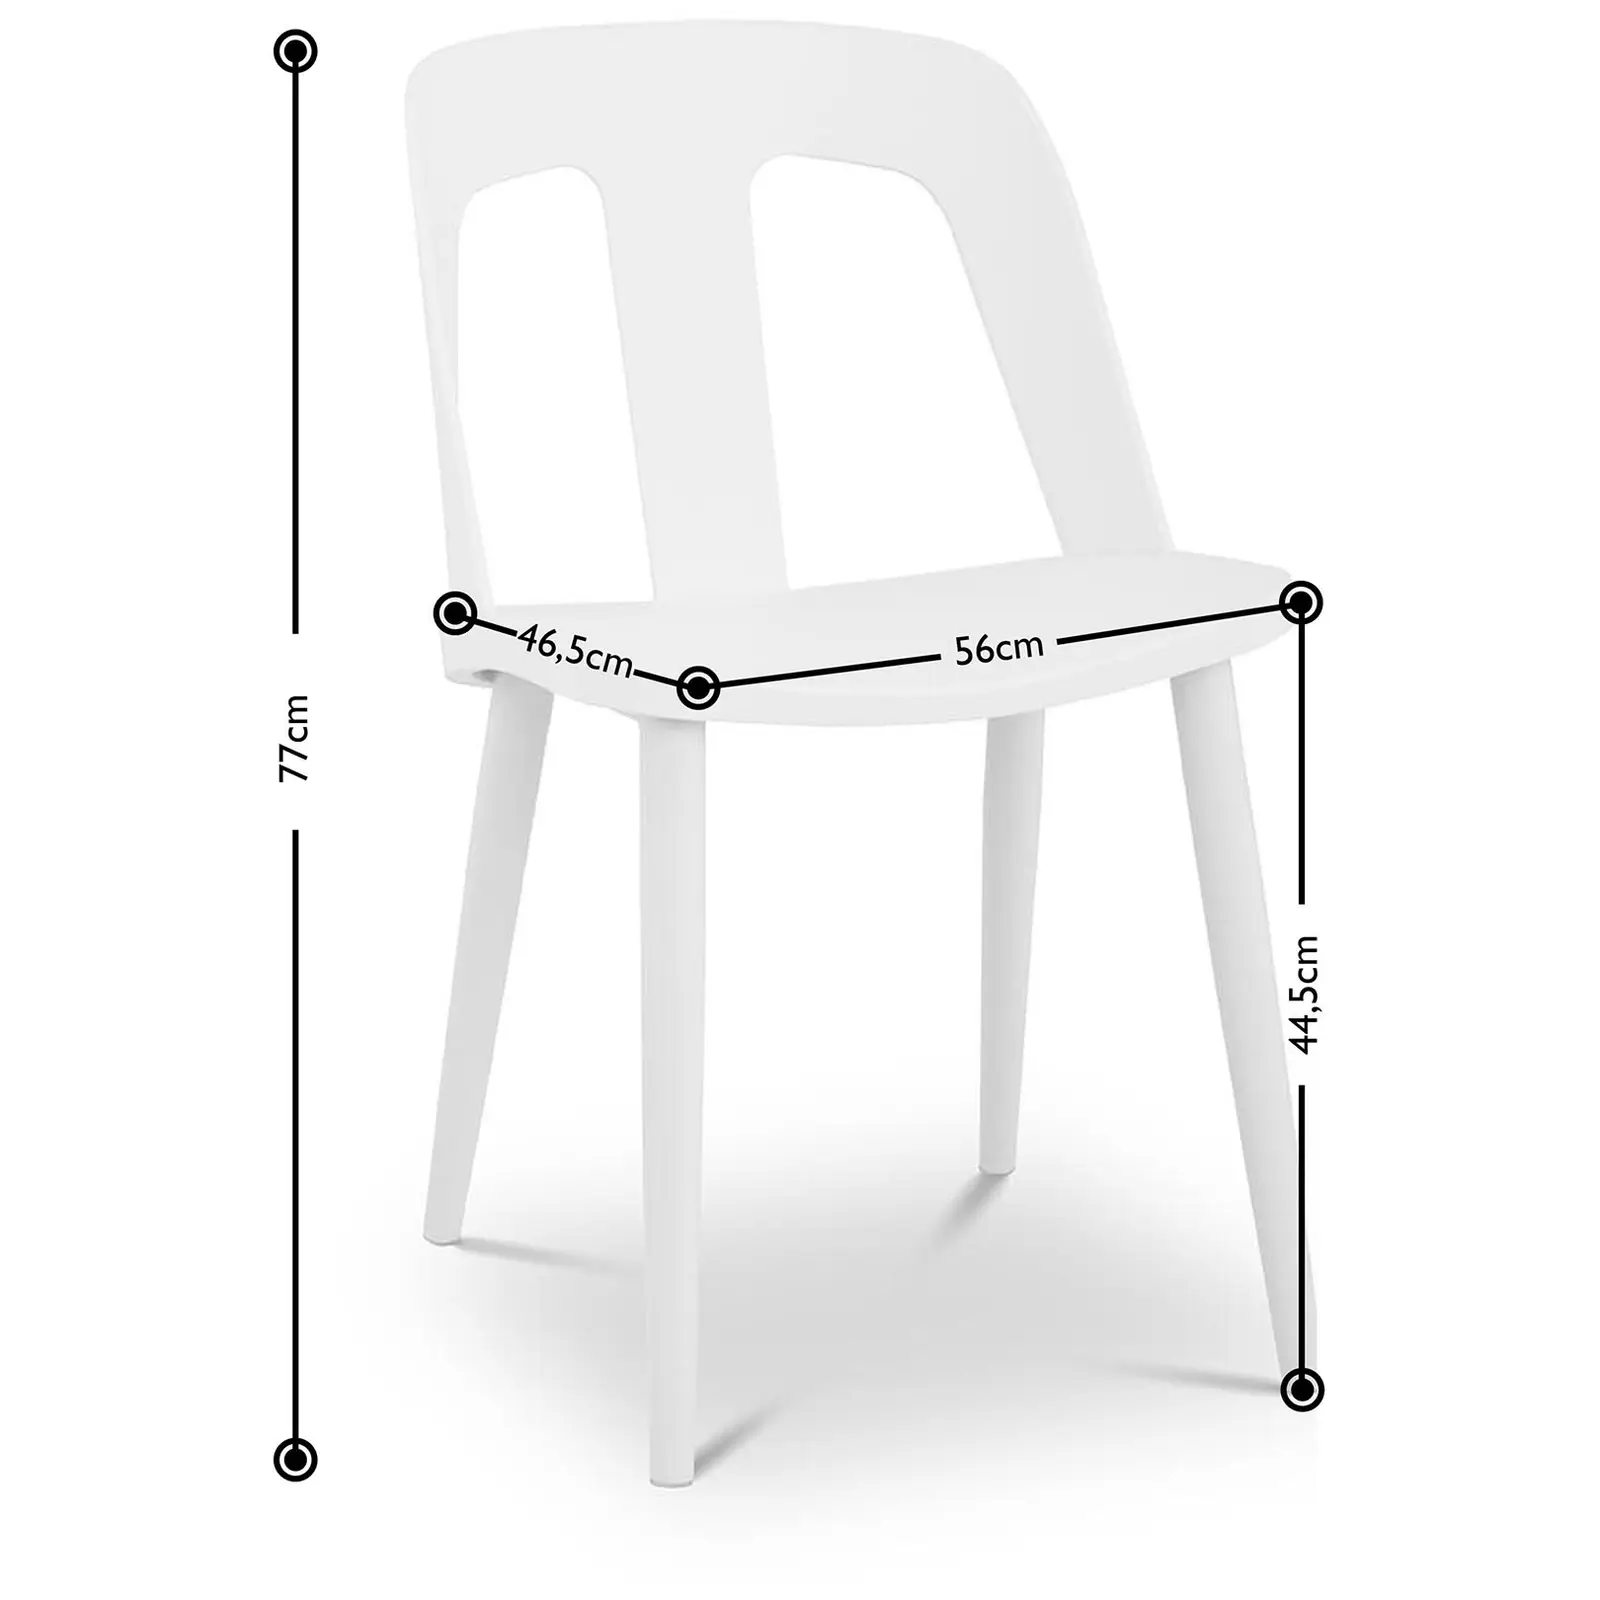 Stuhl - 2er Set - bis 150 kg - Sitzfläche 56 x 46,5 cm - schwarz-weiß